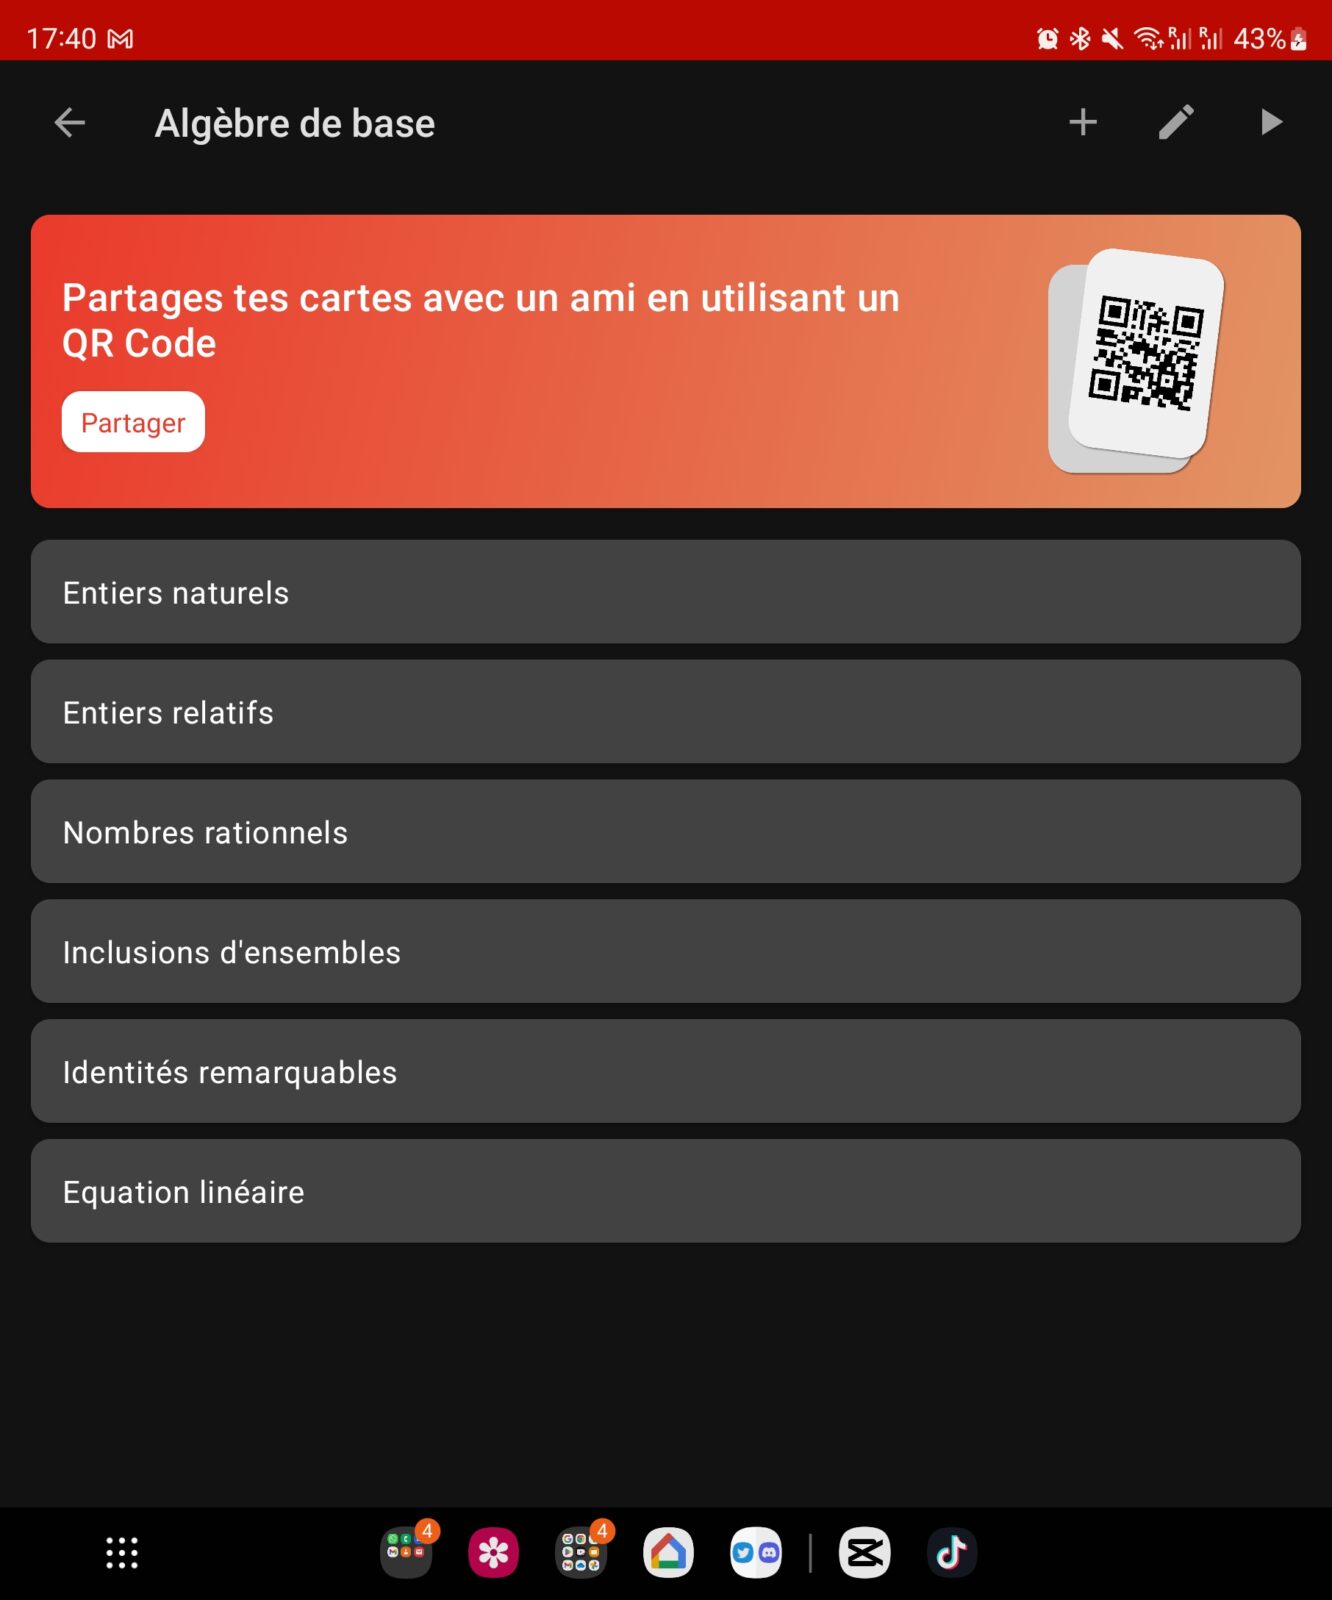 LaTeX Cards : l’app à installer pour sa rentrée ! Actualité